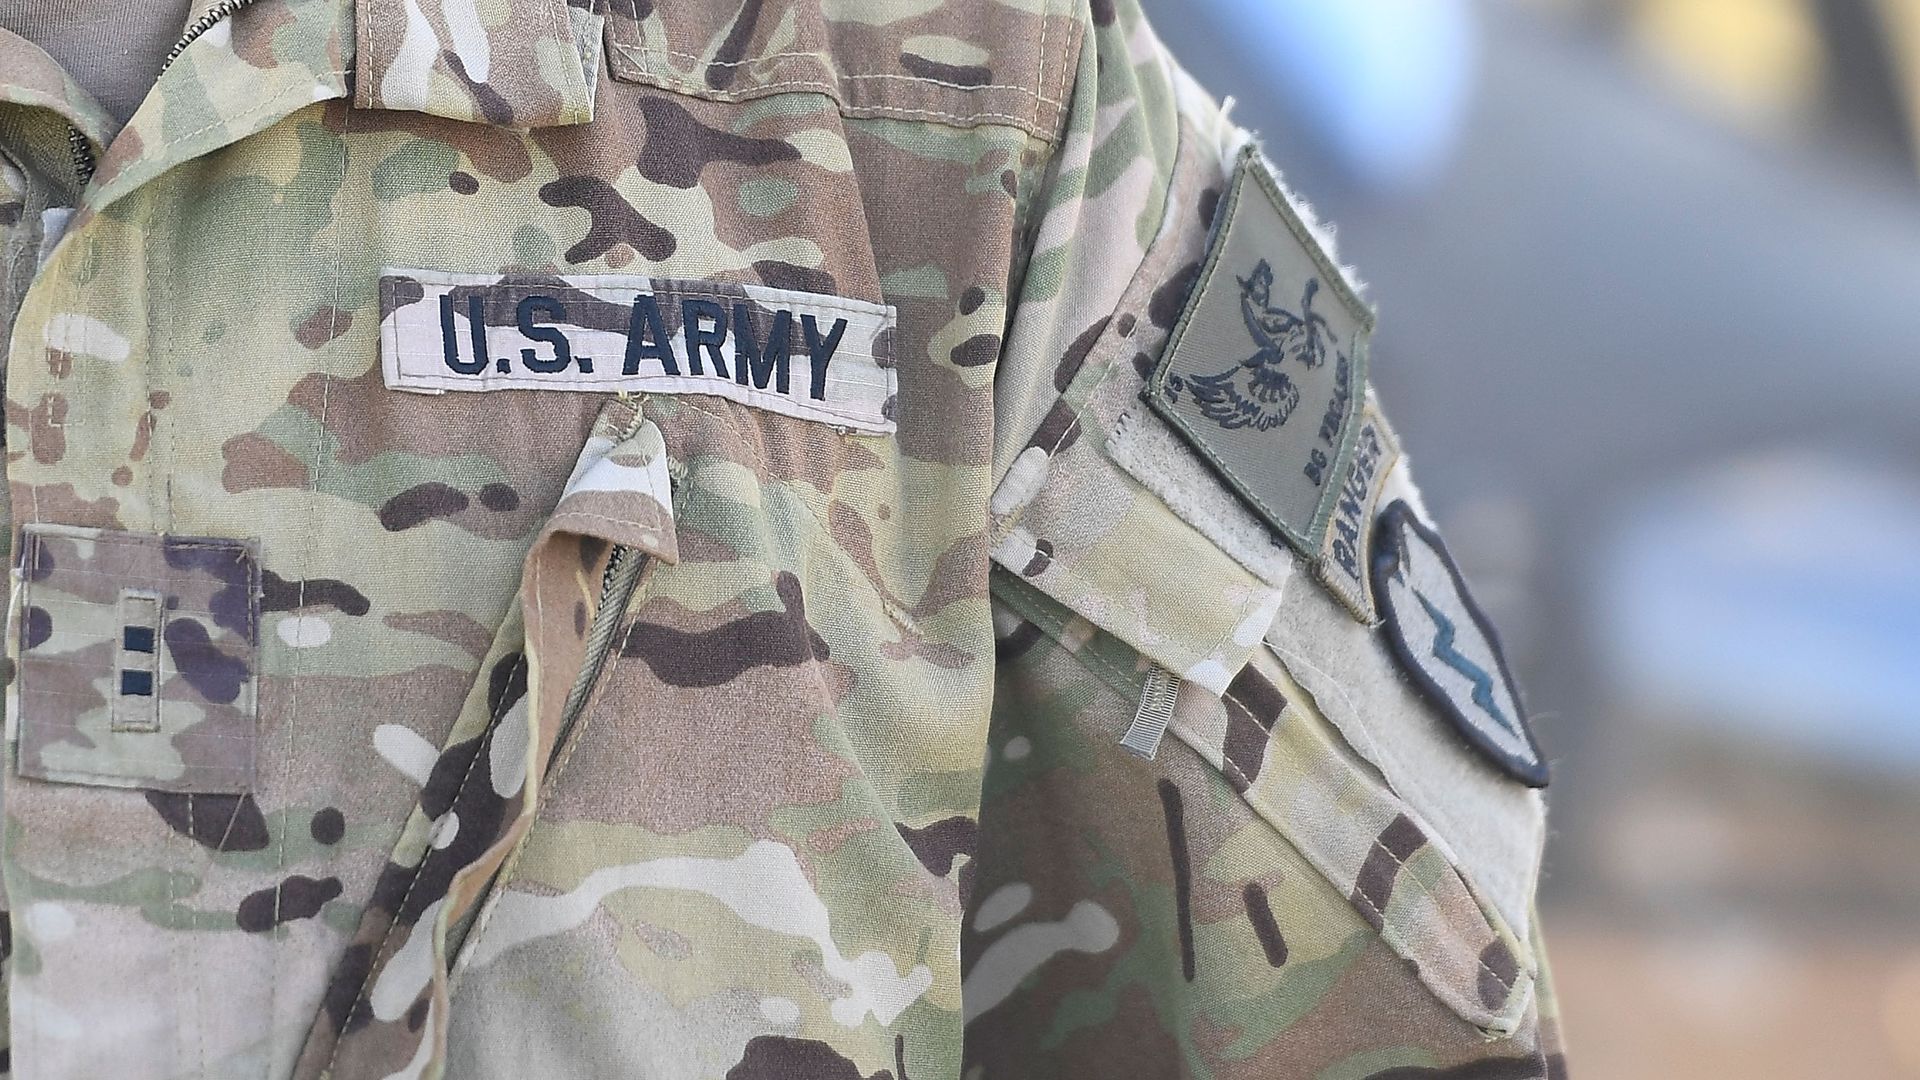 An Army uniform